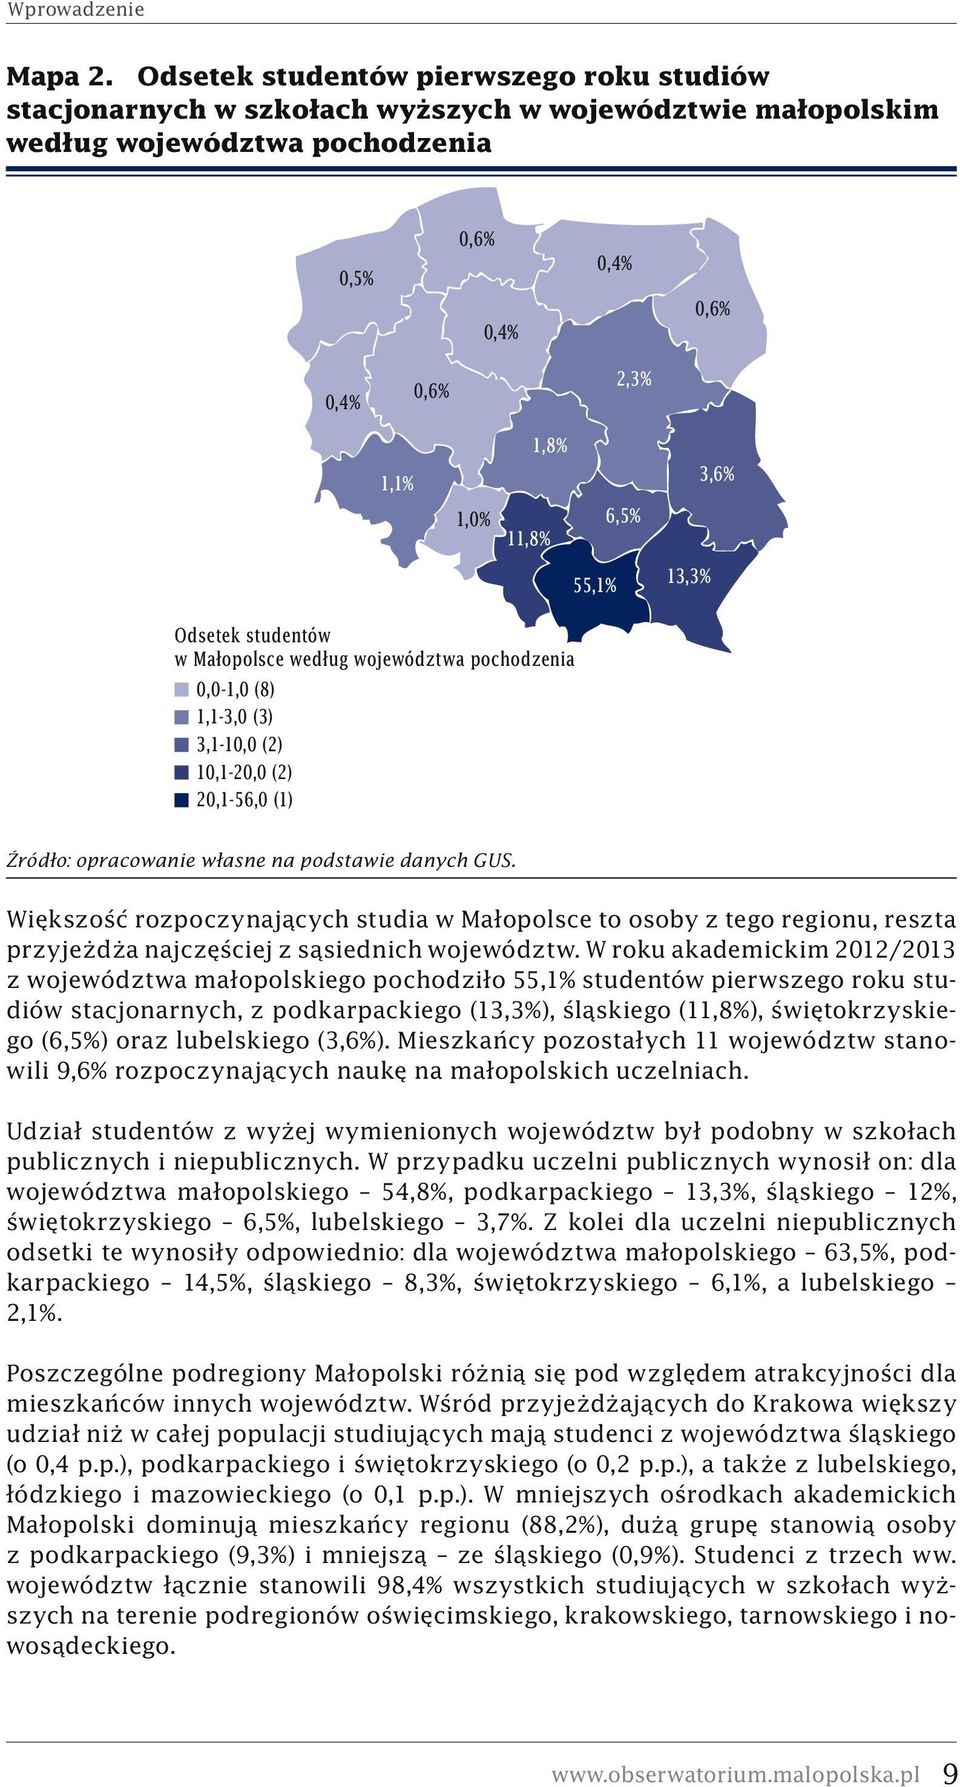 6,5% 55,1% 13,3% Odsetek studentów w Małopolsce według województwa pochodzenia 0,0-1,0 (8) 1,1-3,0 (3) 3,1-10,0 (2) 10,1-20,0 (2) 20,1-56,0 (1) Źródło: opracowanie własne na podstawie danych GUS.